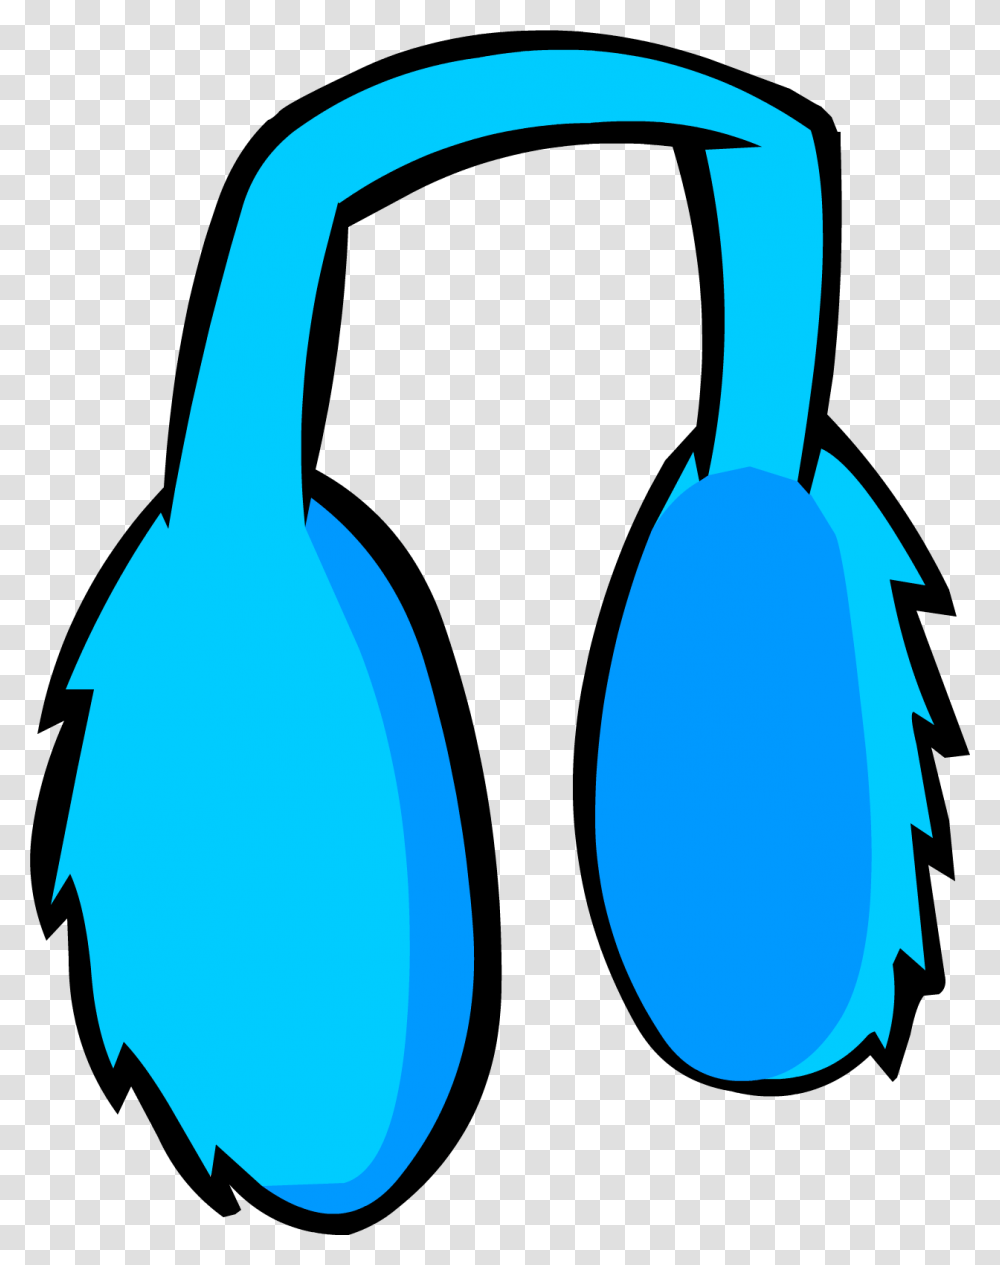 Club Penguin Rewritten Wiki Ear Muffs Clipart, Electronics, Bird, Animal, Headphones Transparent Png